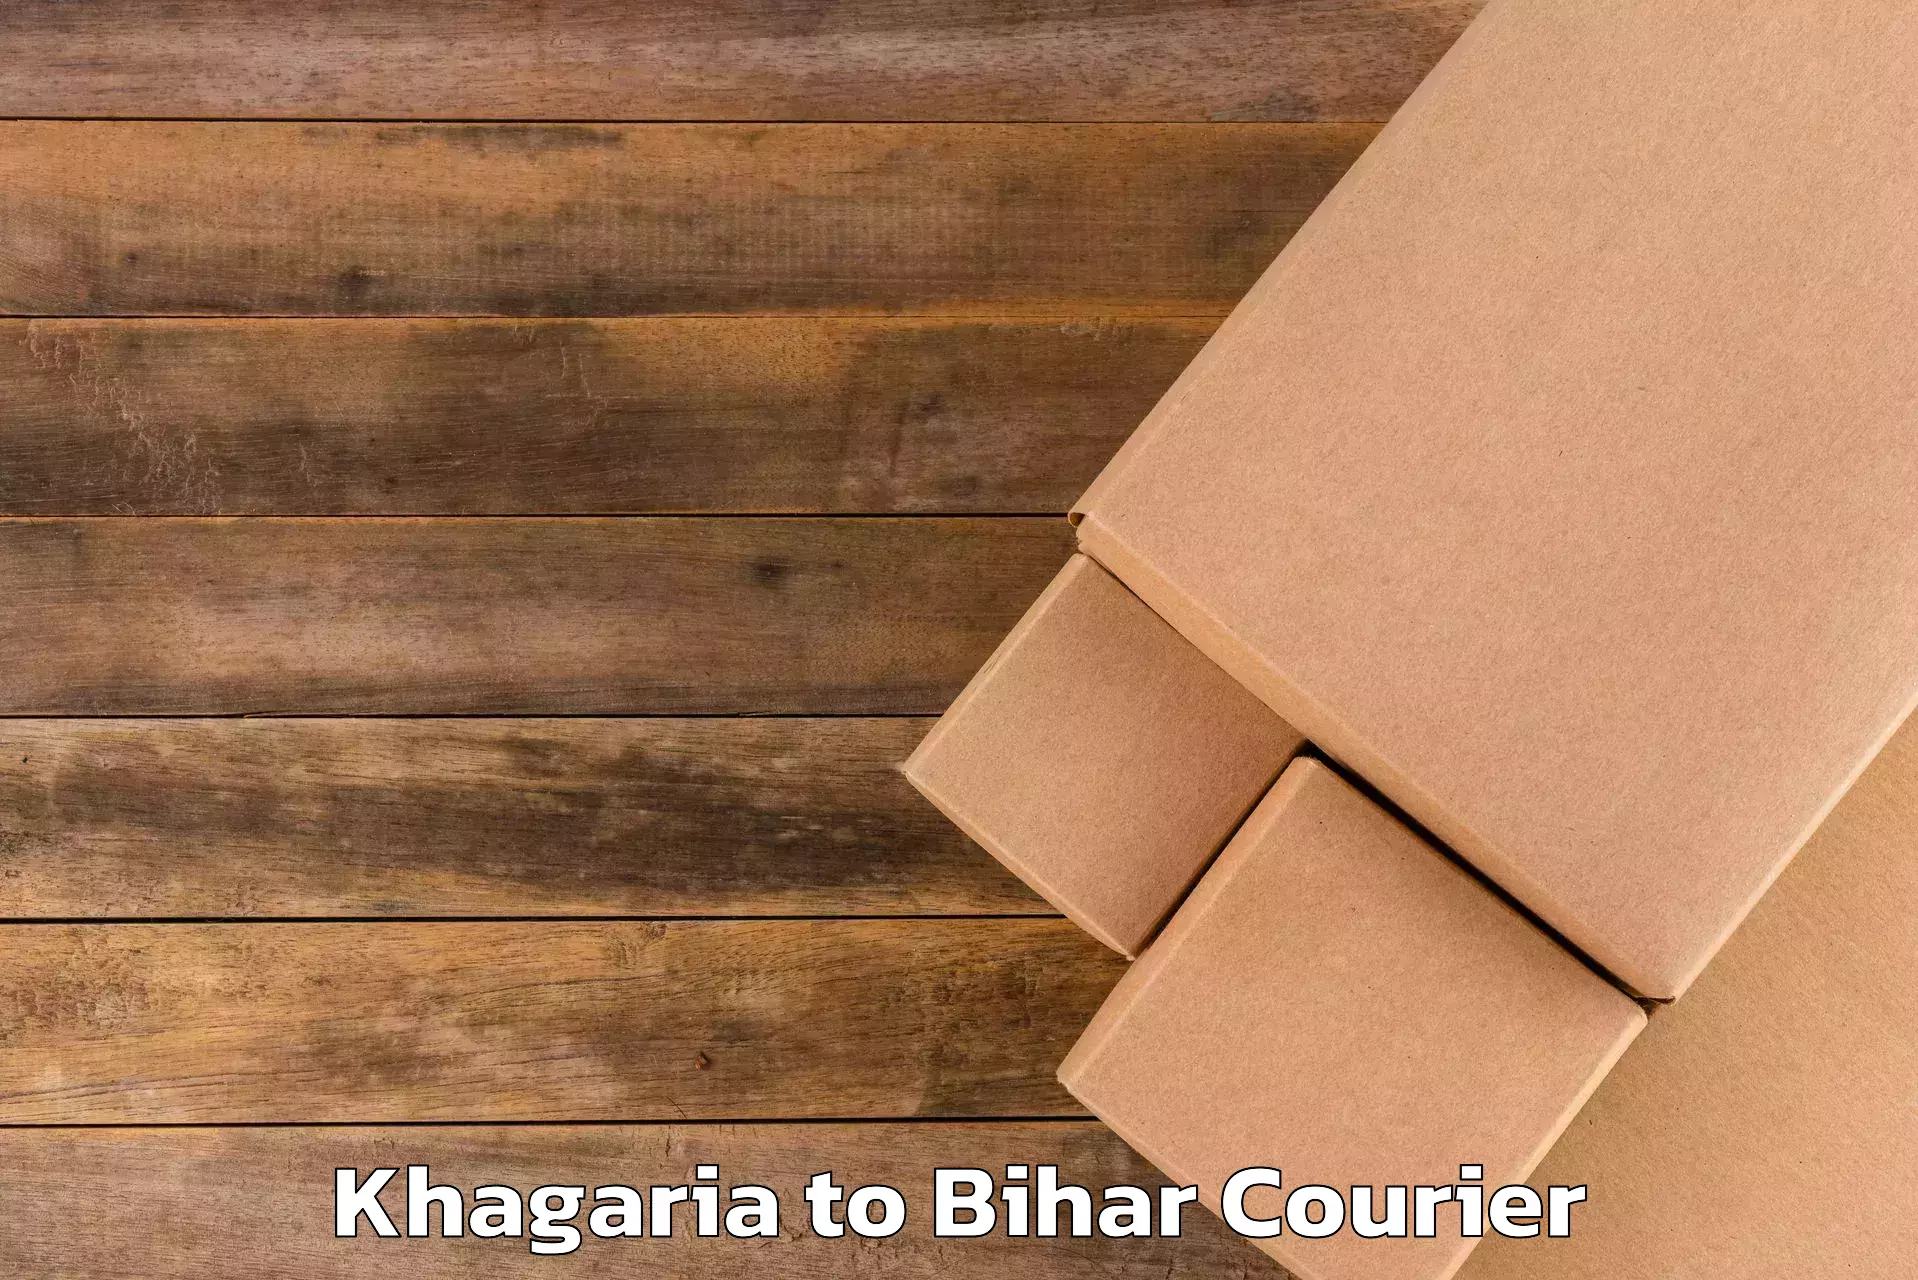 Budget-friendly baggage courier in Khagaria to Malmaliya